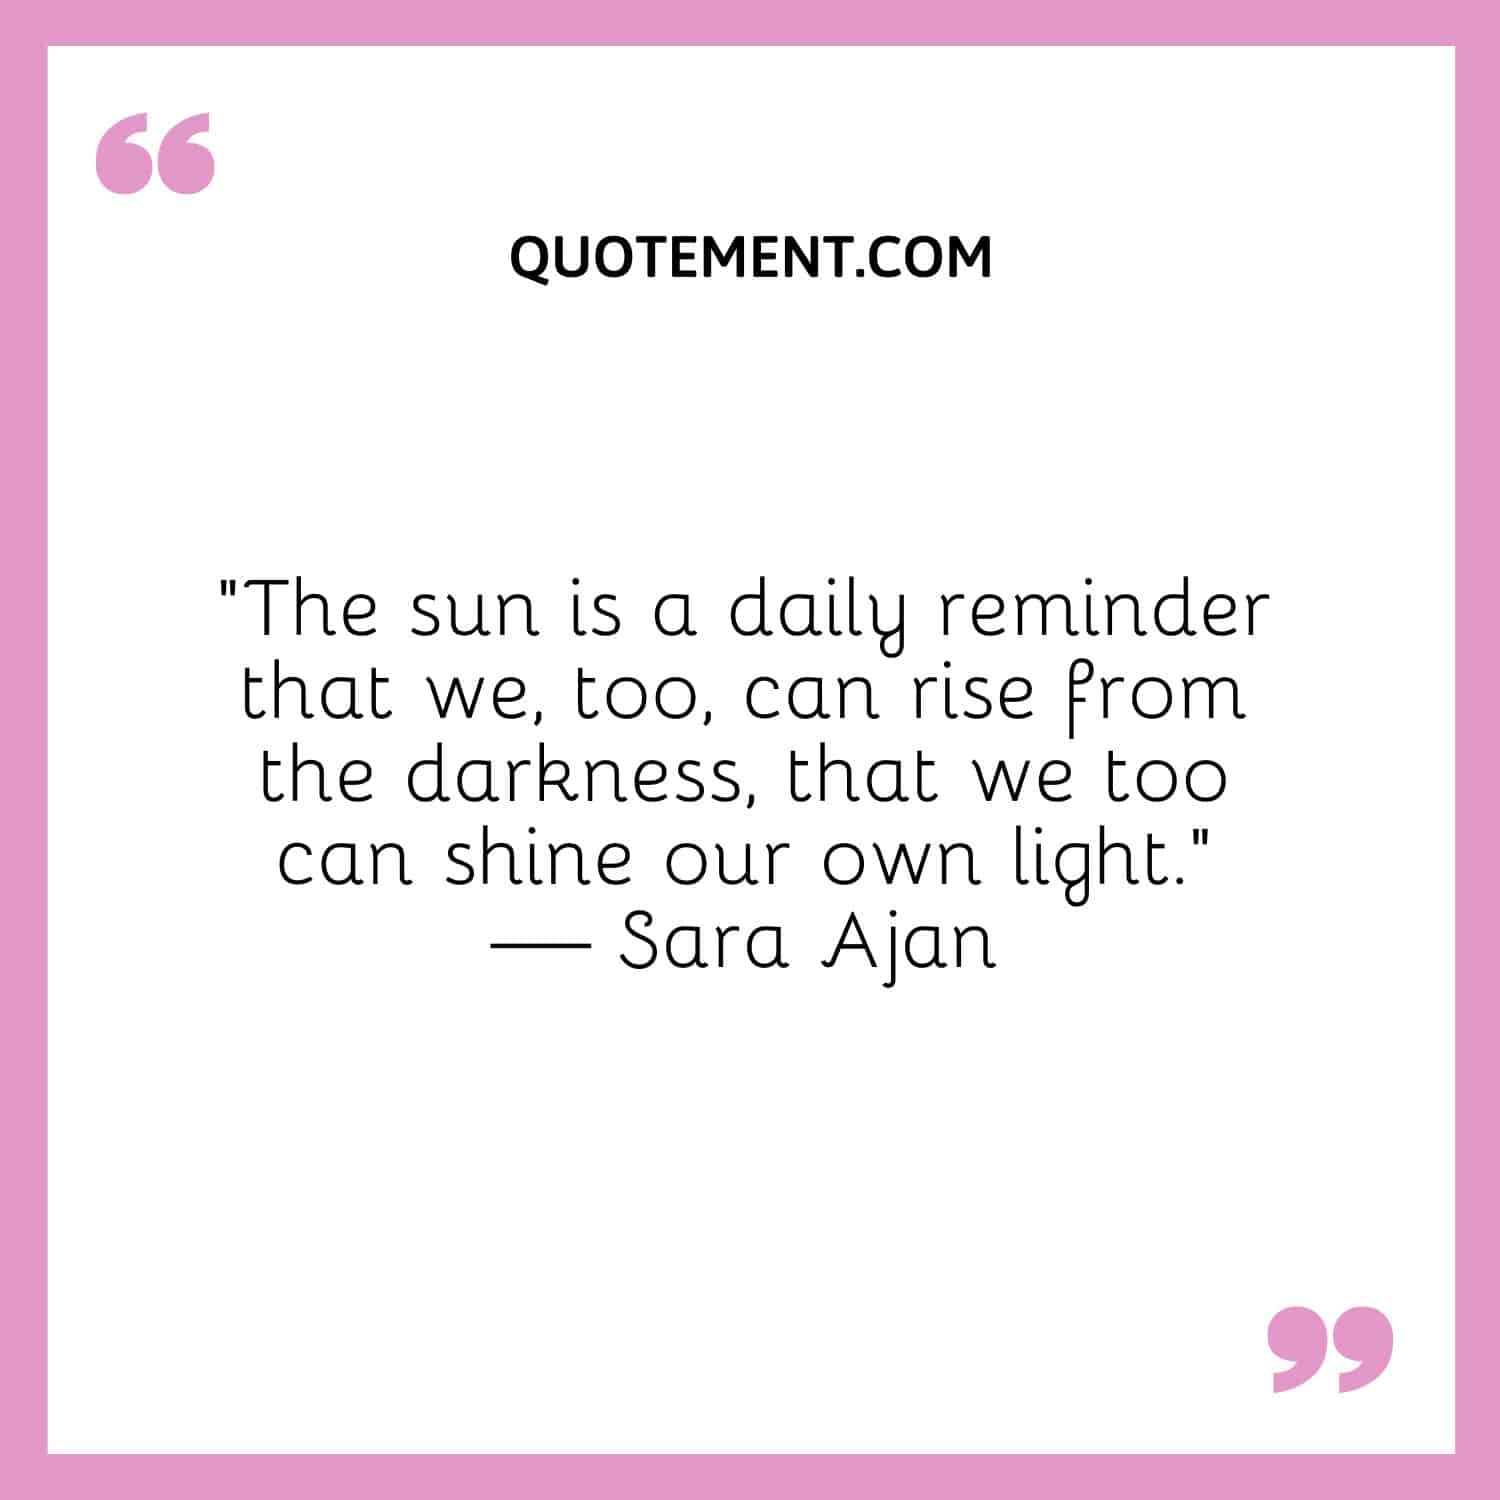 El sol es un recordatorio diario de que nosotros también podemos salir de la oscuridad.